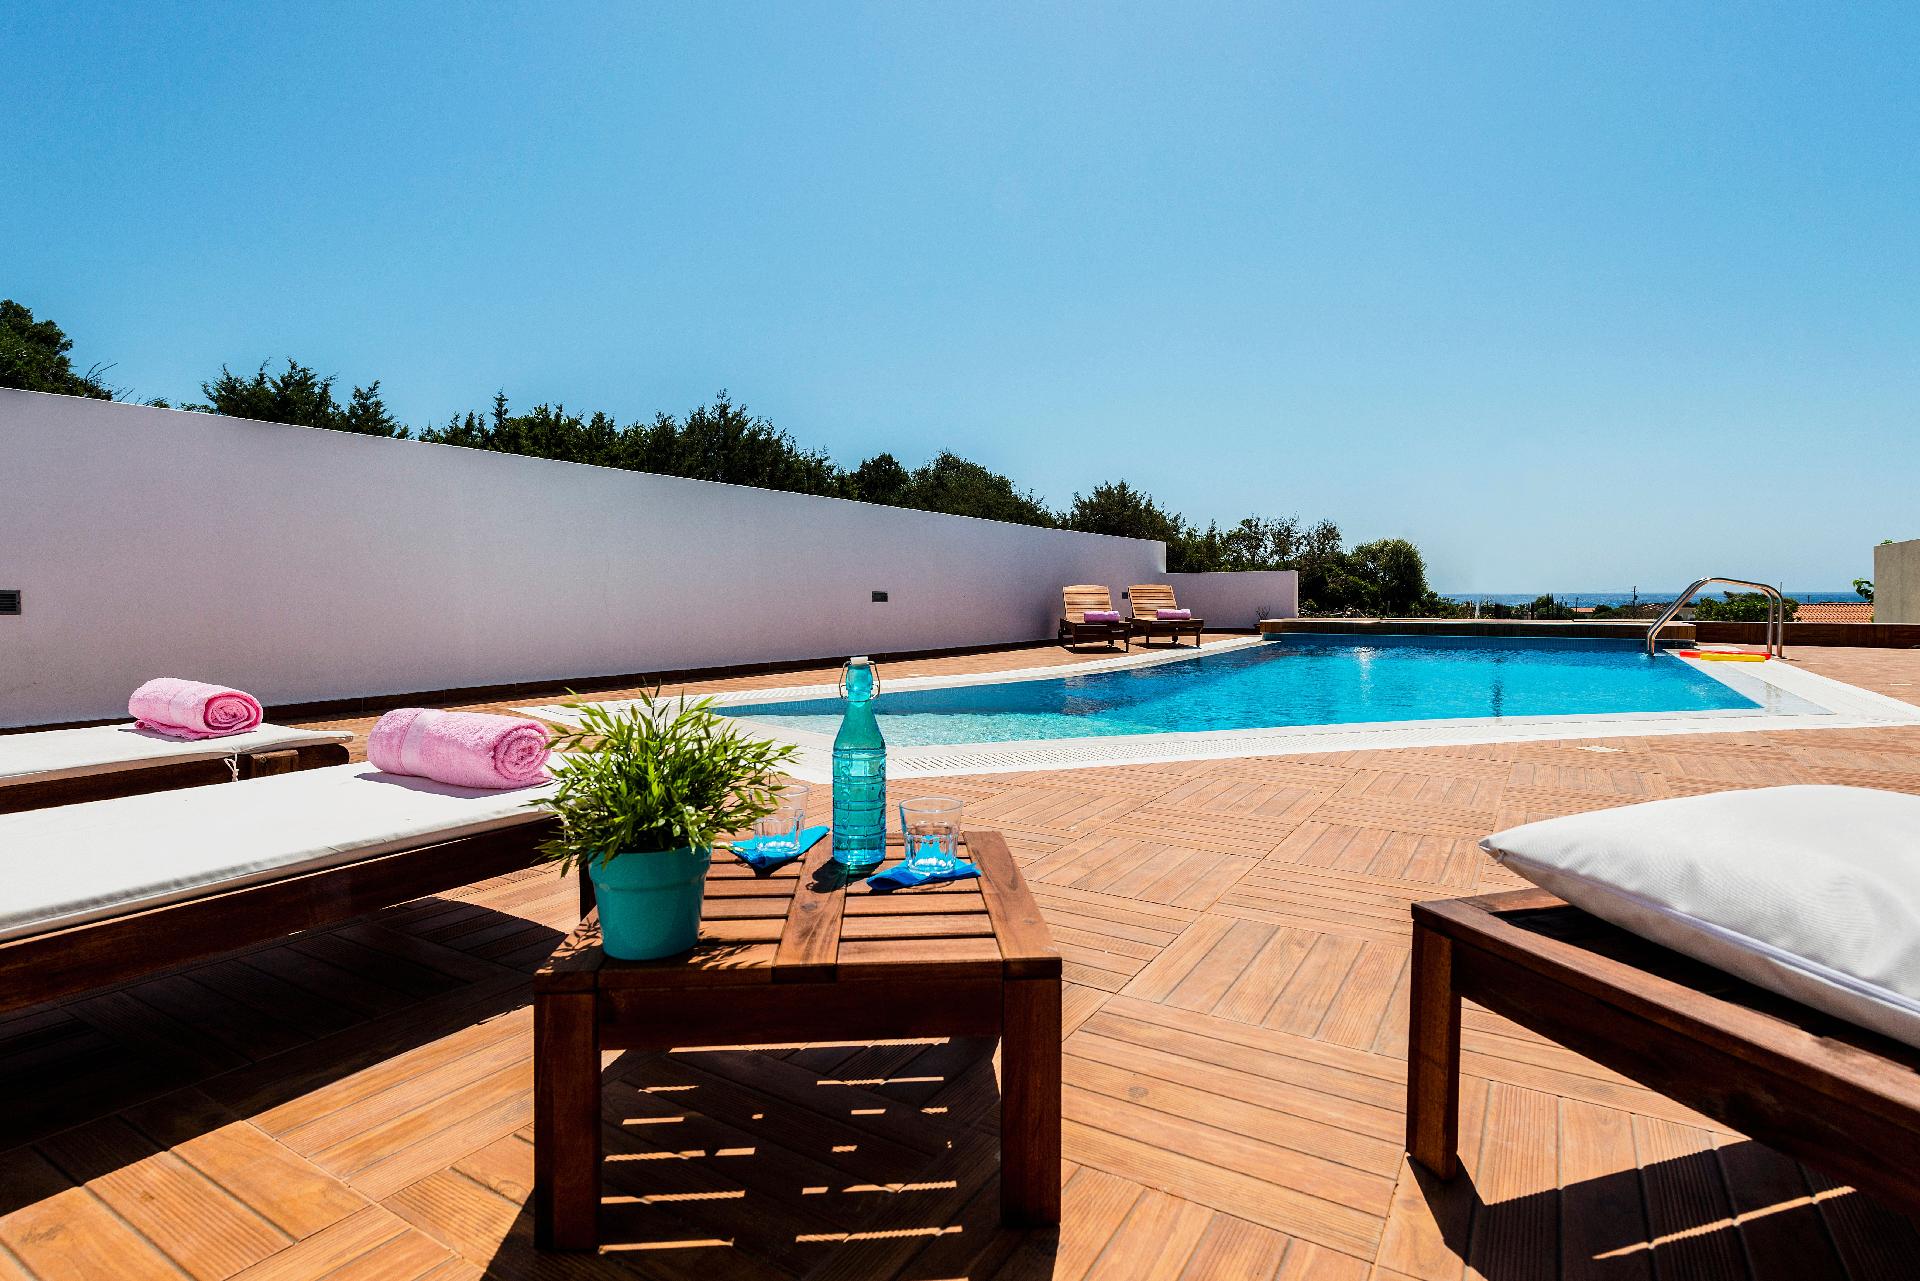 Villa mit Pool in ländlicher Umgebung und ate Ferienhaus in Griechenland